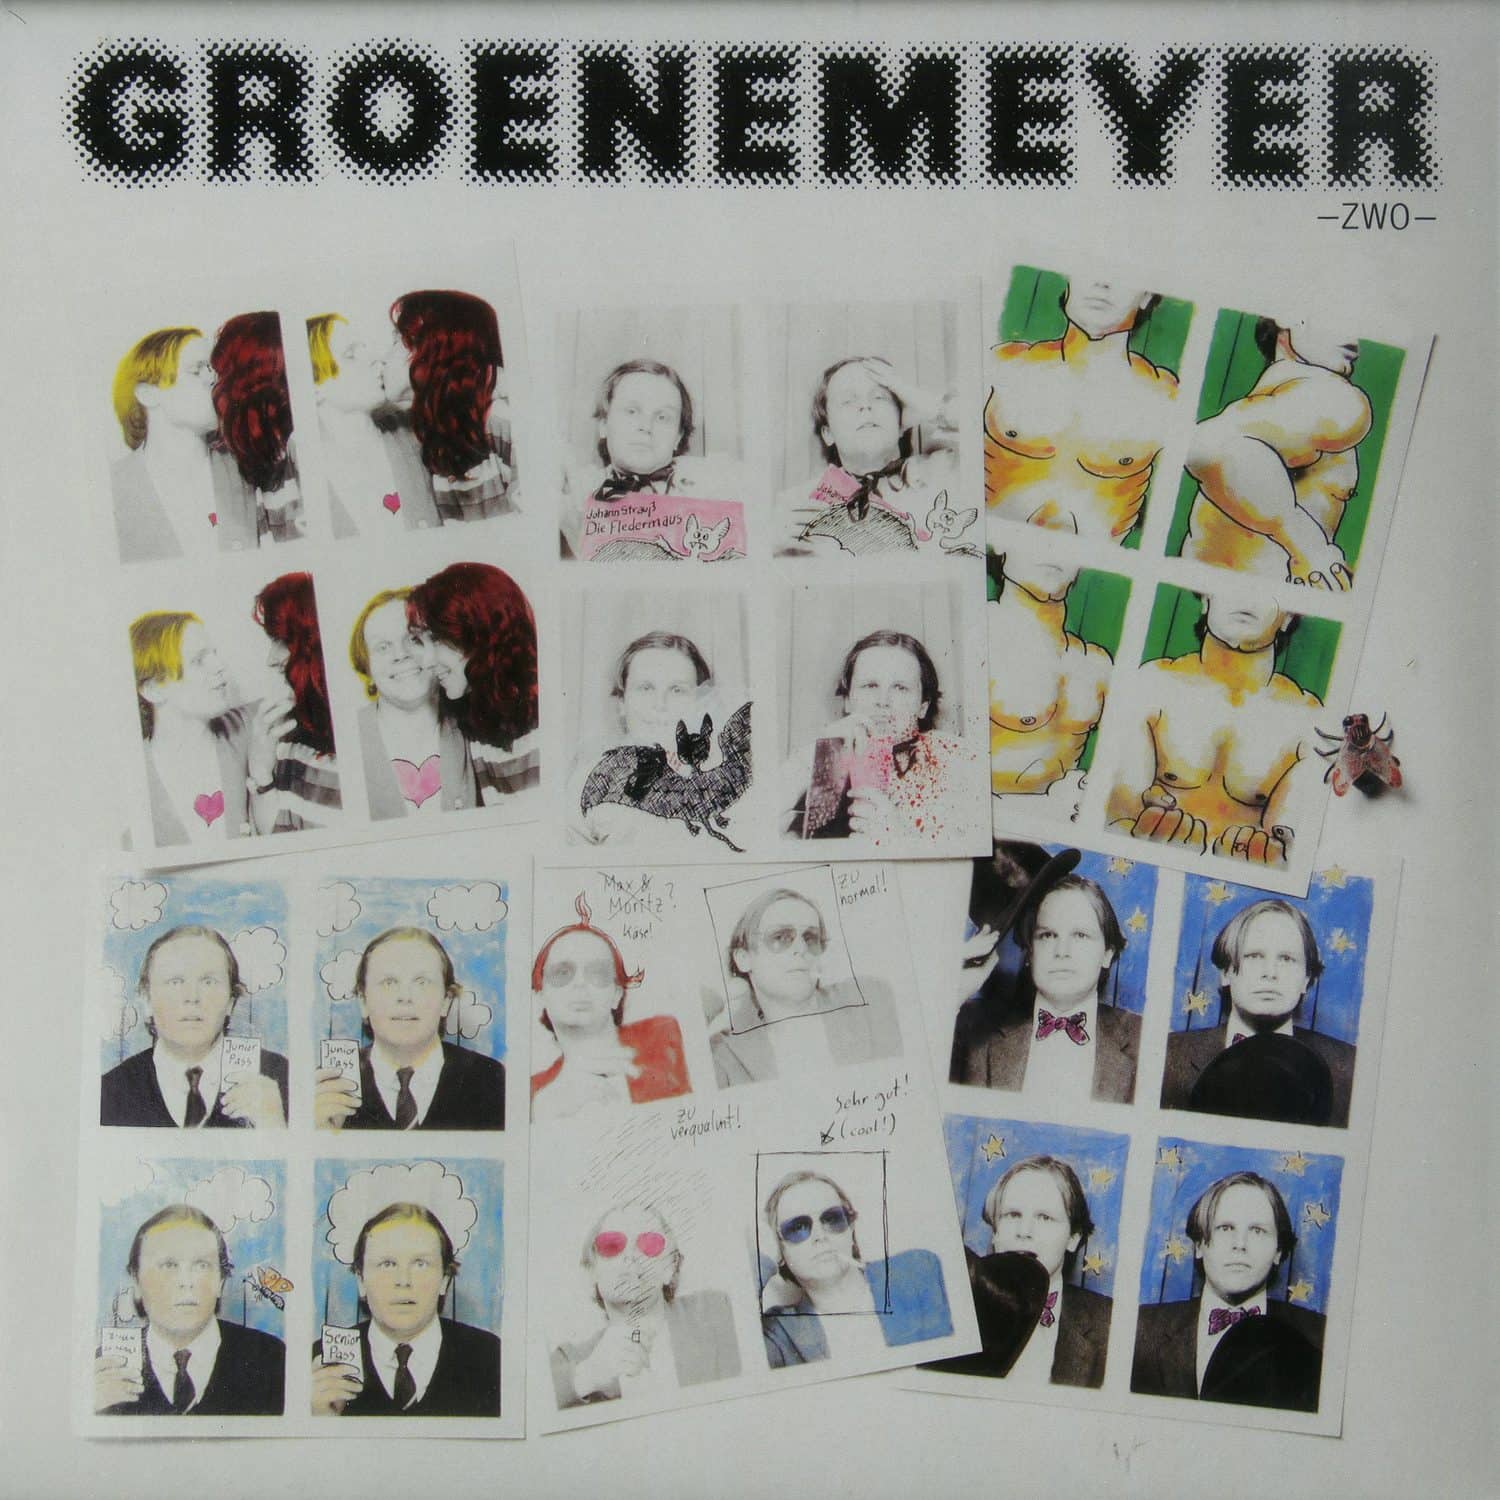 Herbert Groenemeyer - ZWO 